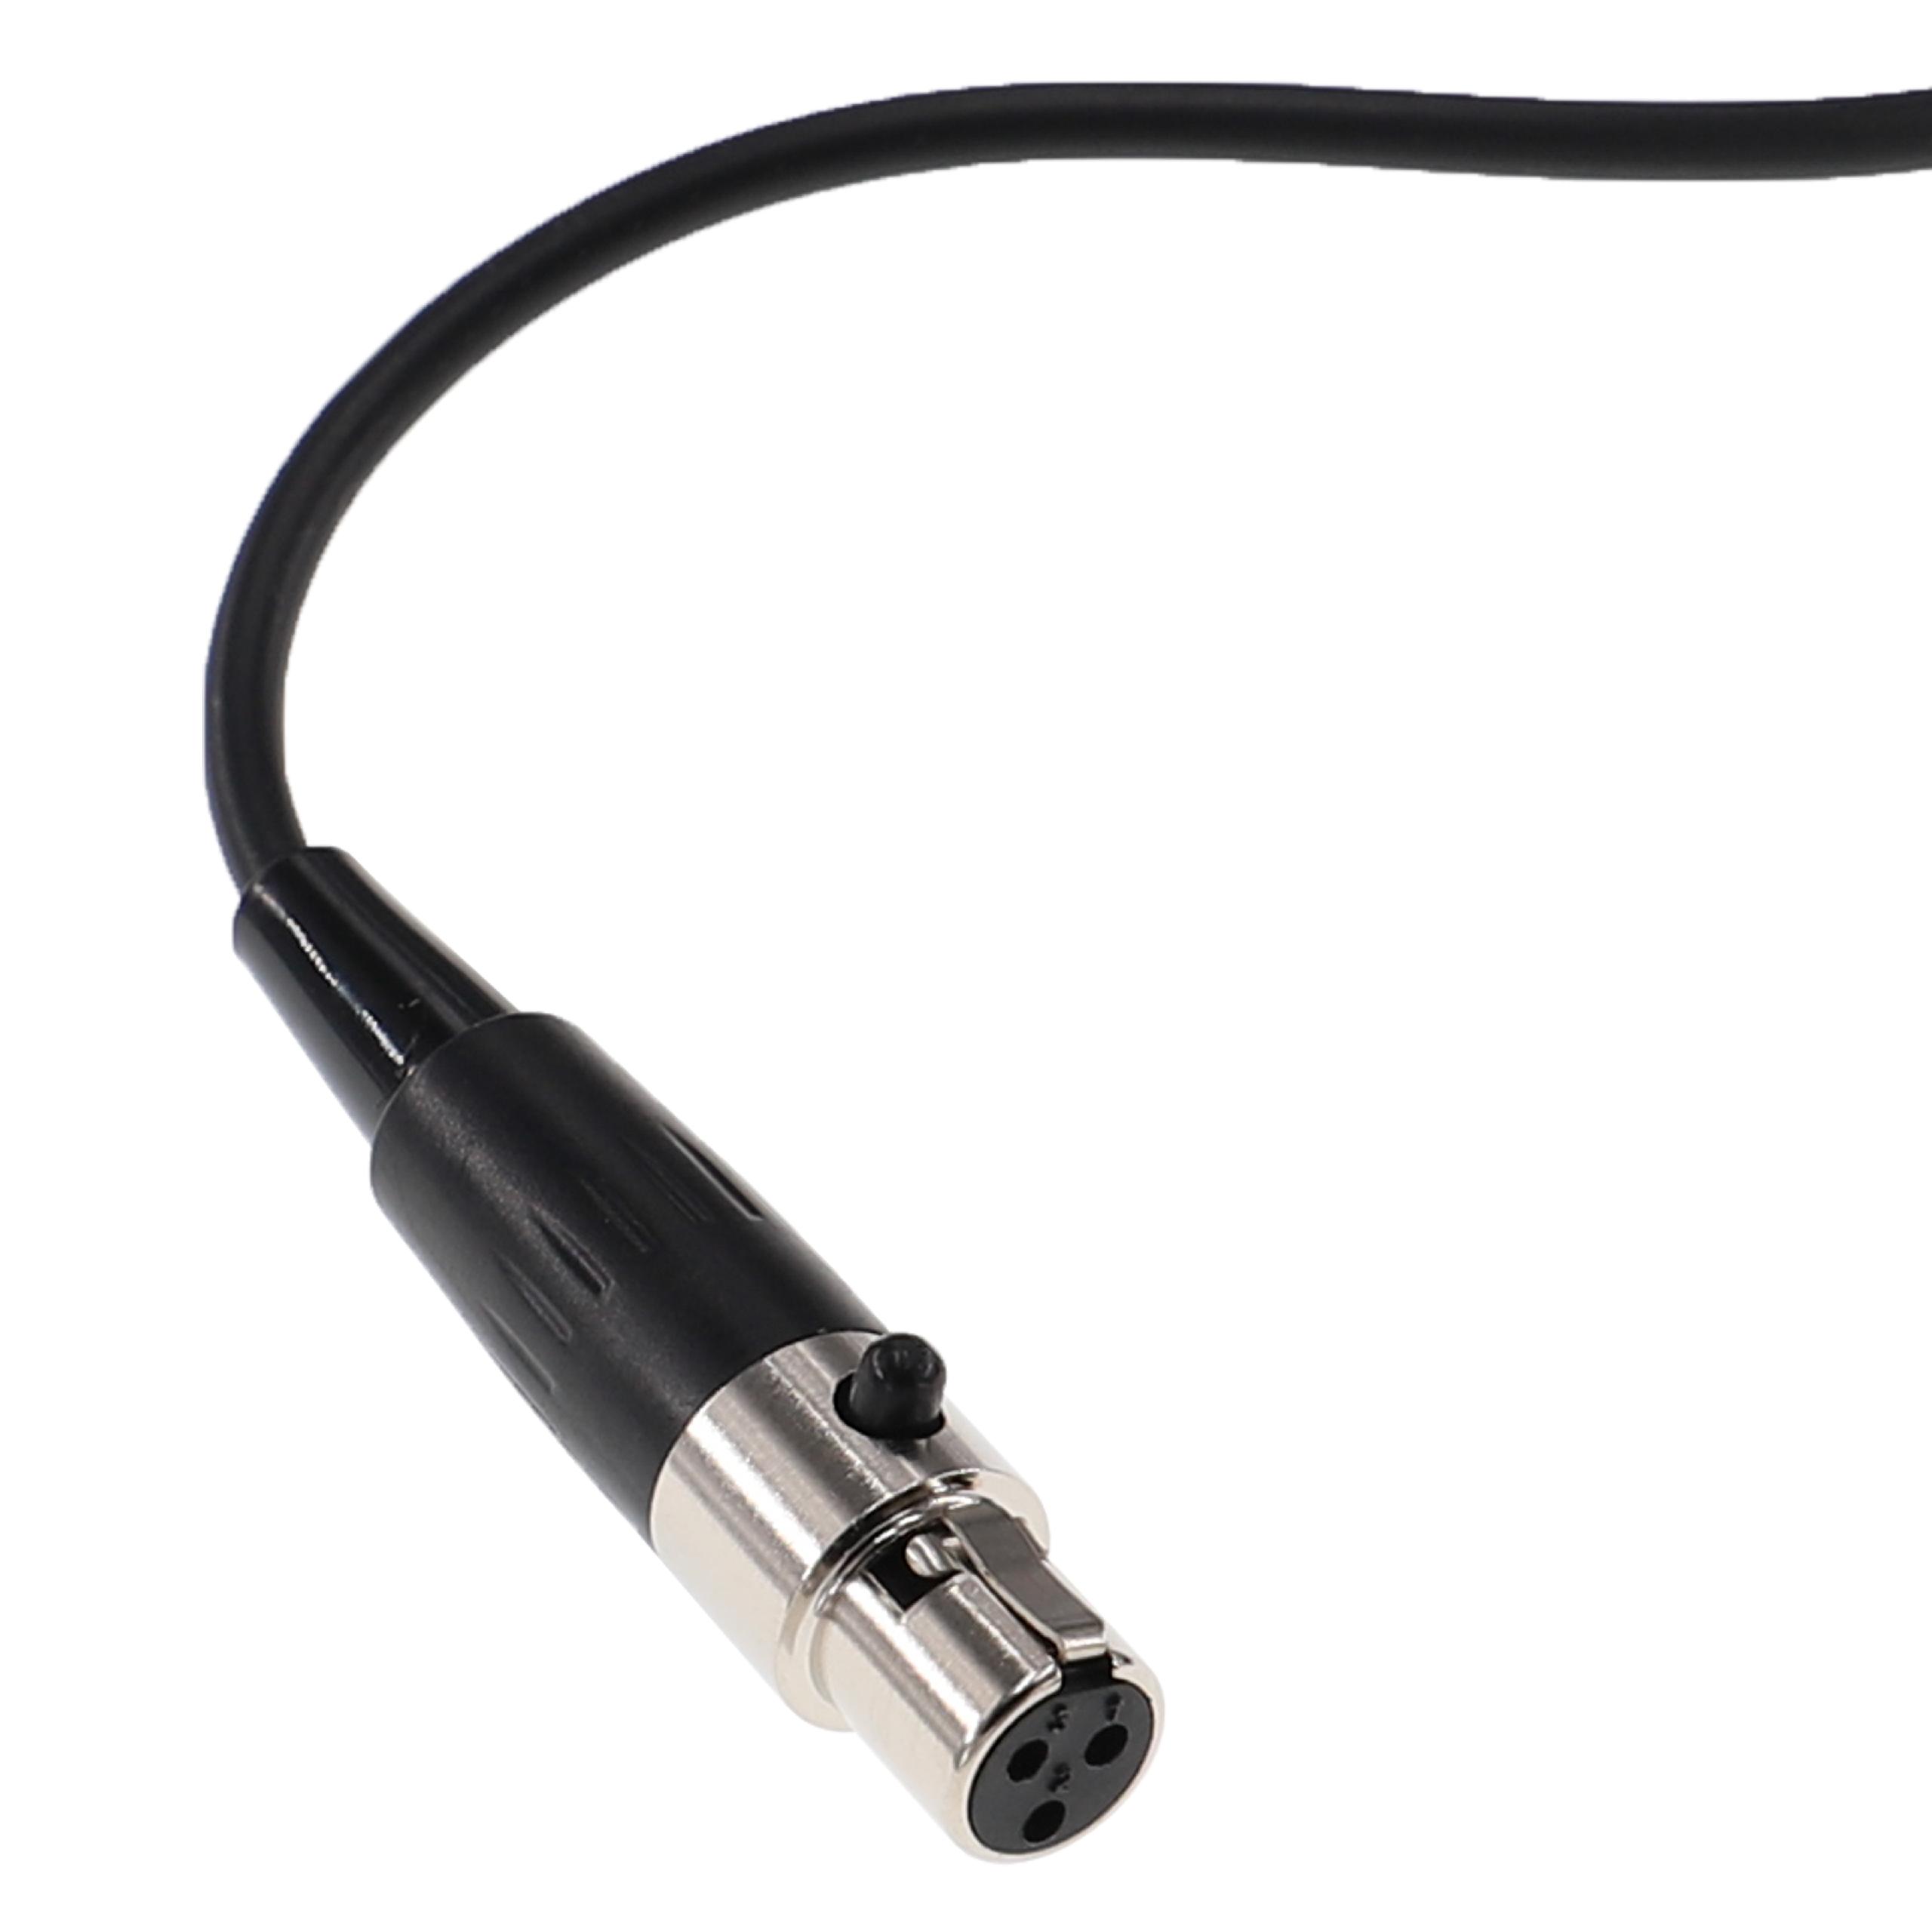 Headphones Cable suitable for AKG / Pioneer K240 MK II etc., 3 m